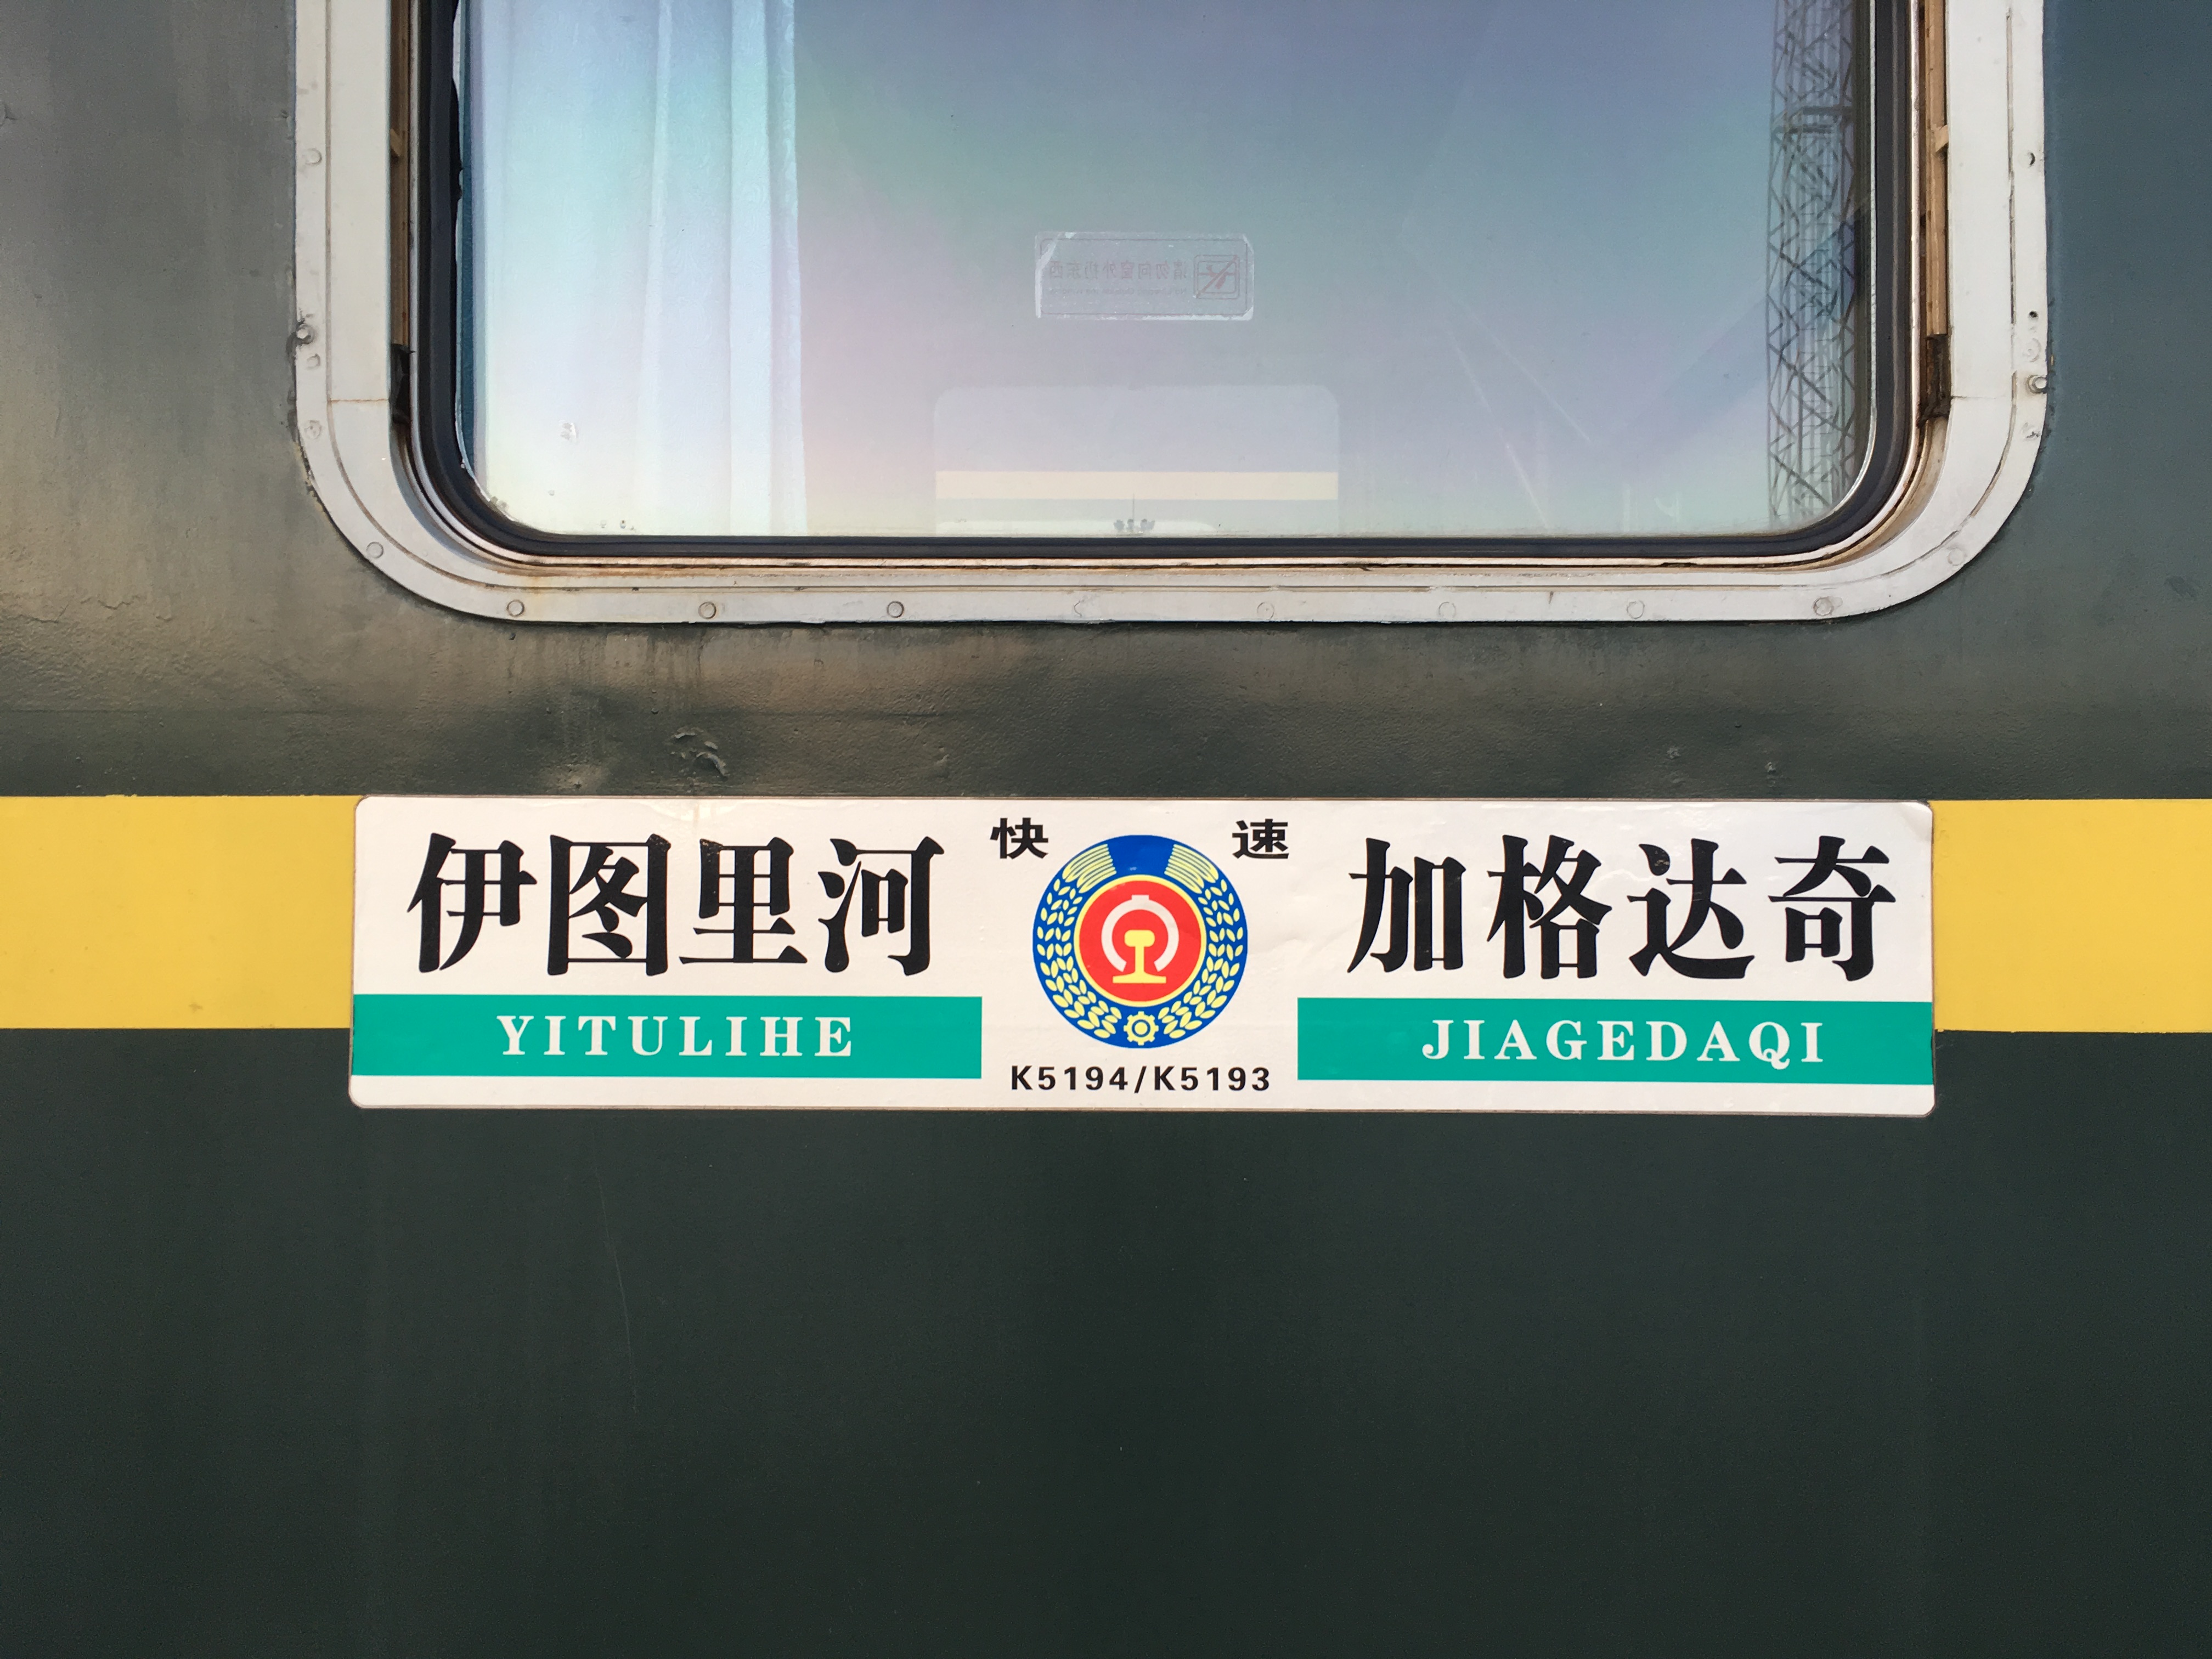 伊加鐵路(伊加線)